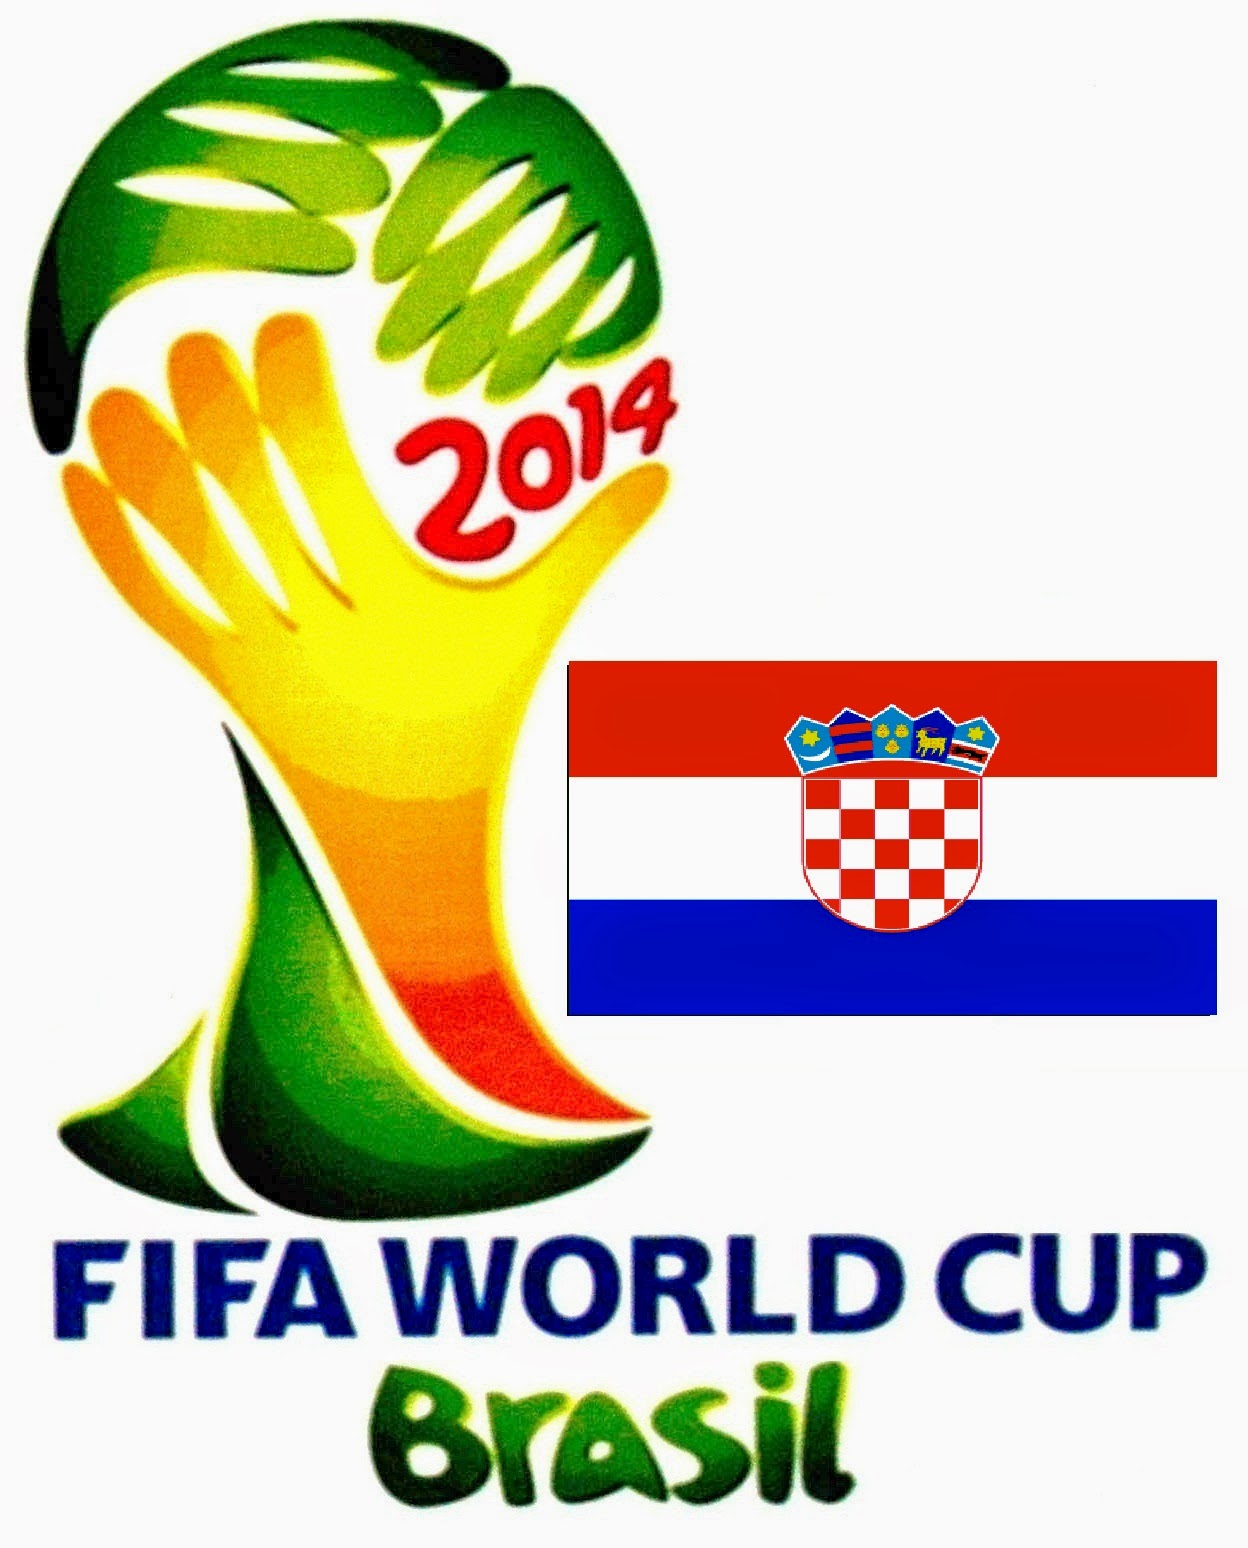 Daftar Nama Pemain Timnas Kroasia Piala Dunia 2014 Harga